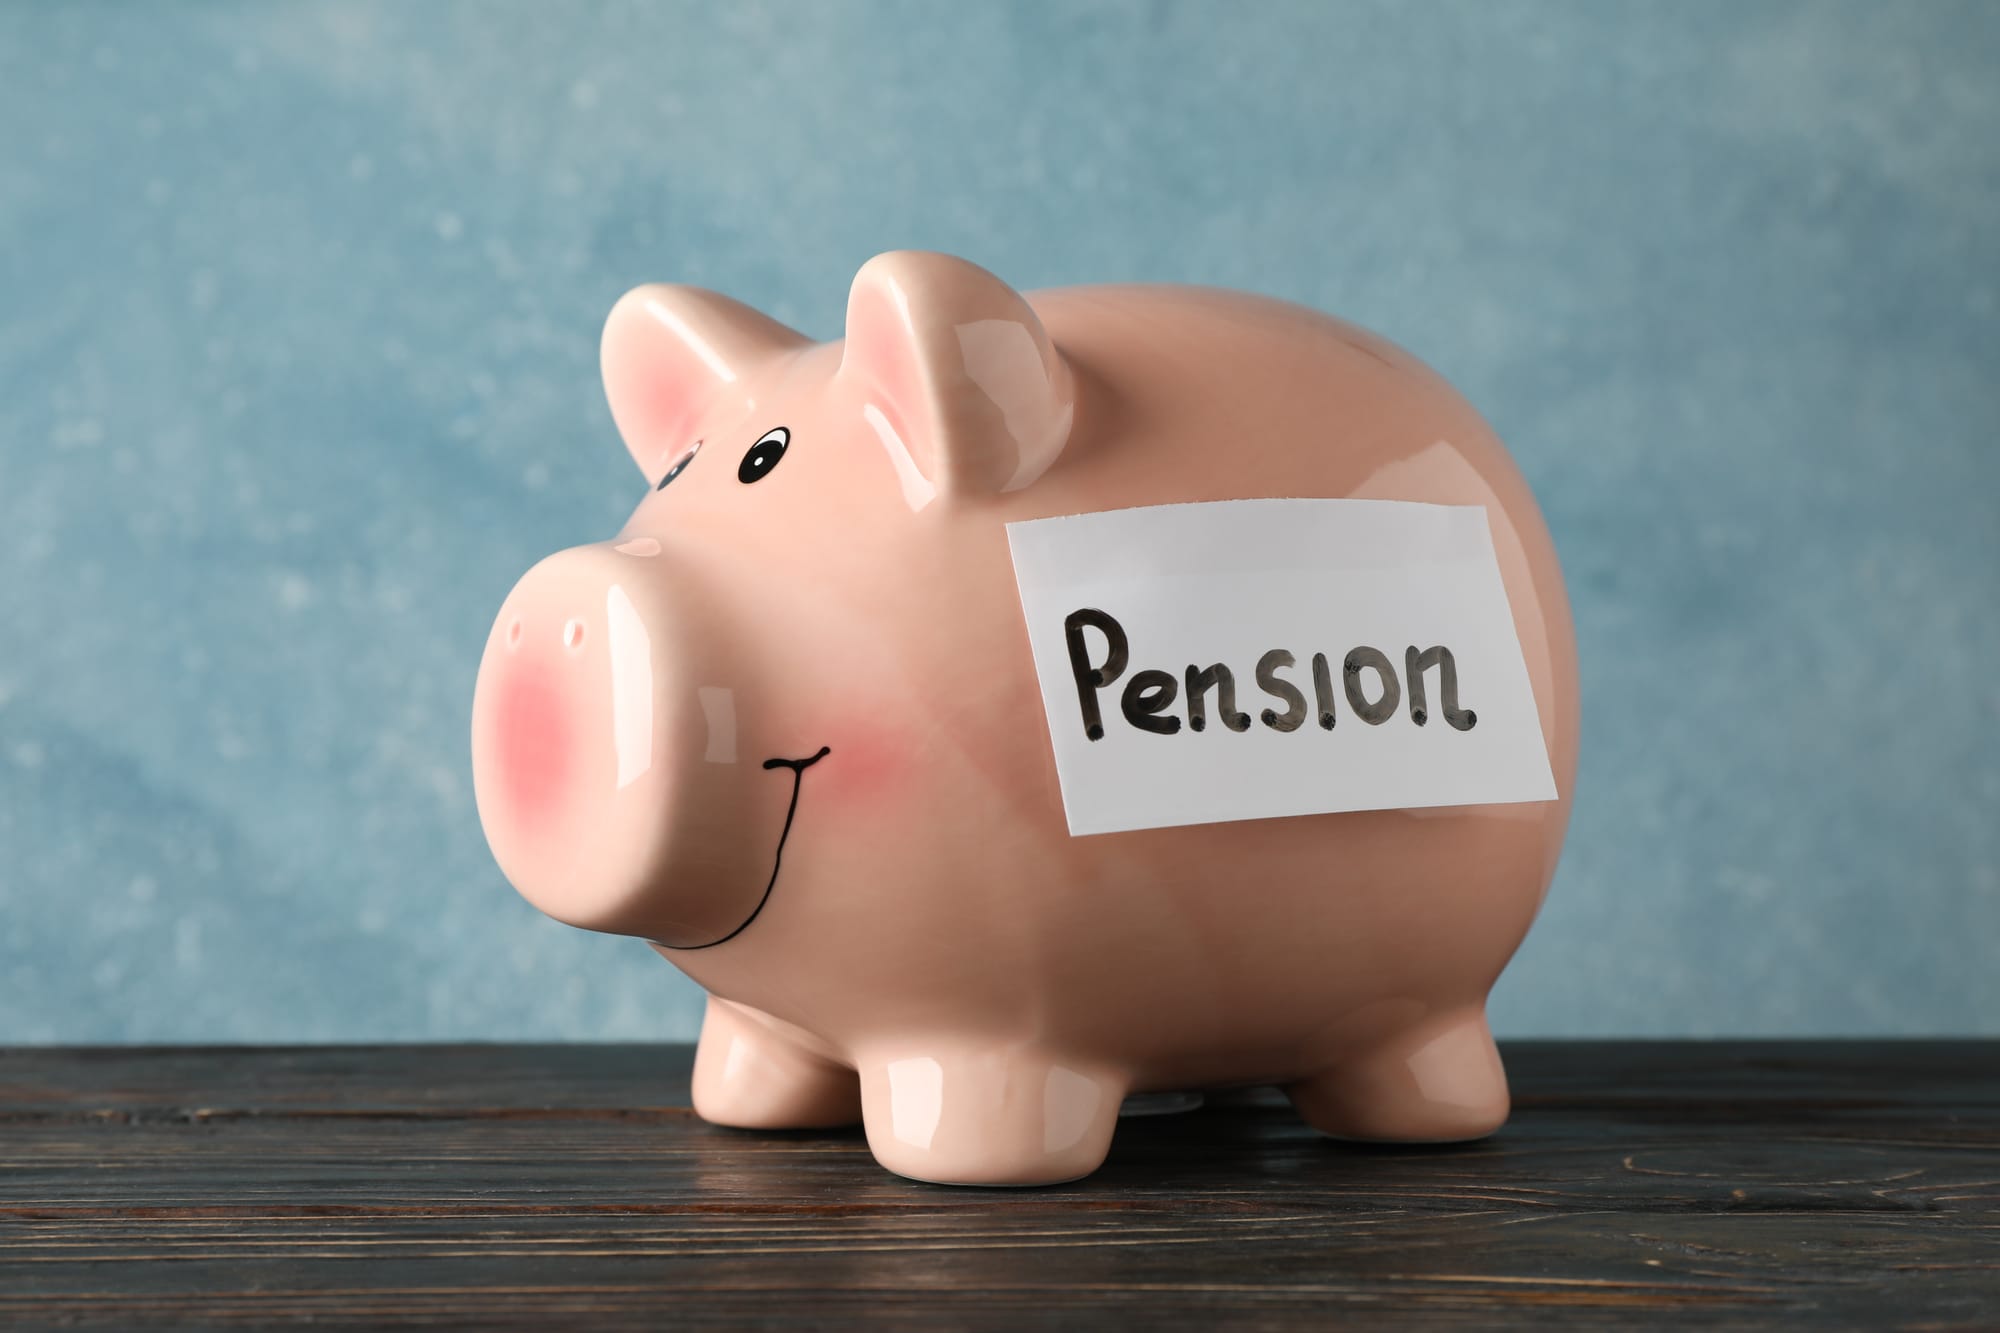 Pension planning often gets put on the backburner